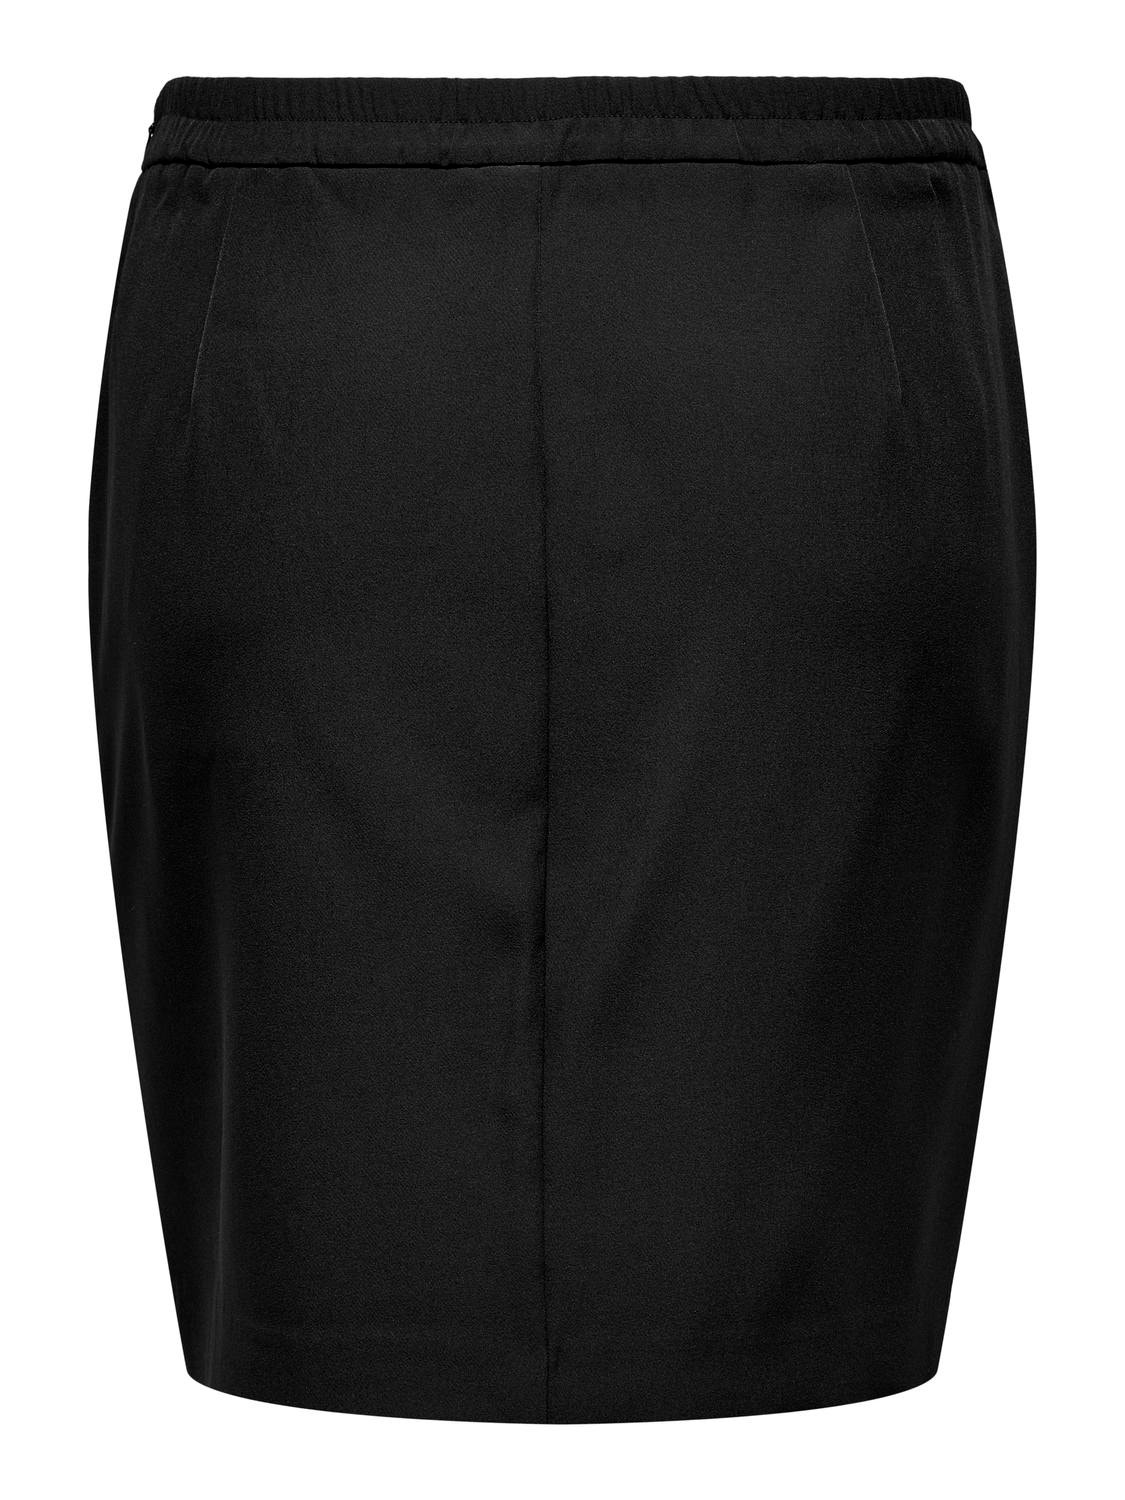 ONLY Short skirt -Black - 15312849